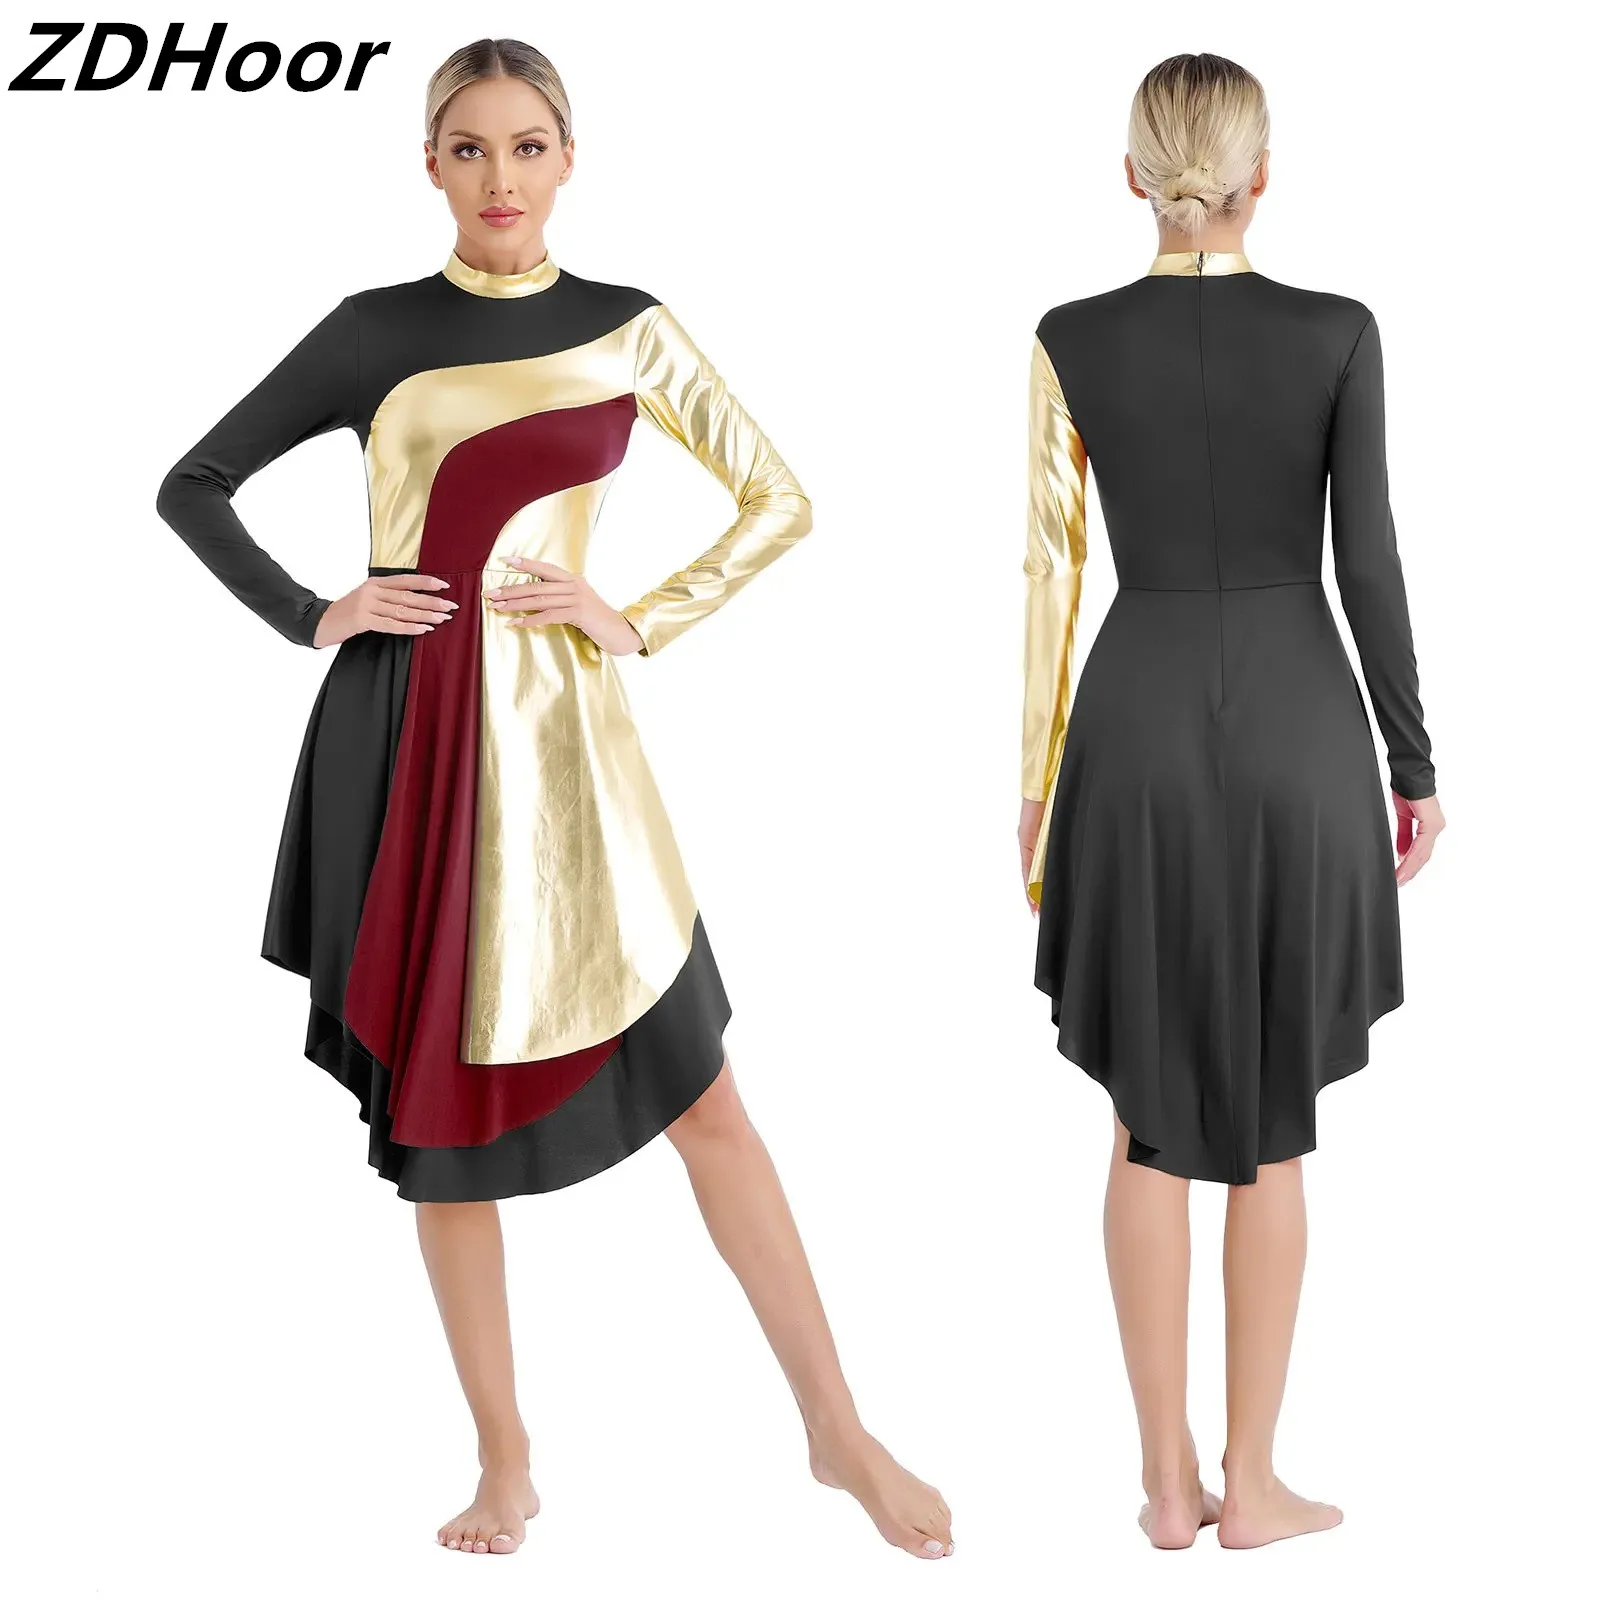 

Womens Liturgical Worship Dance Dresses Mock Neck Long Sleeve Contrast Color Patchwork Curved Hem Dress